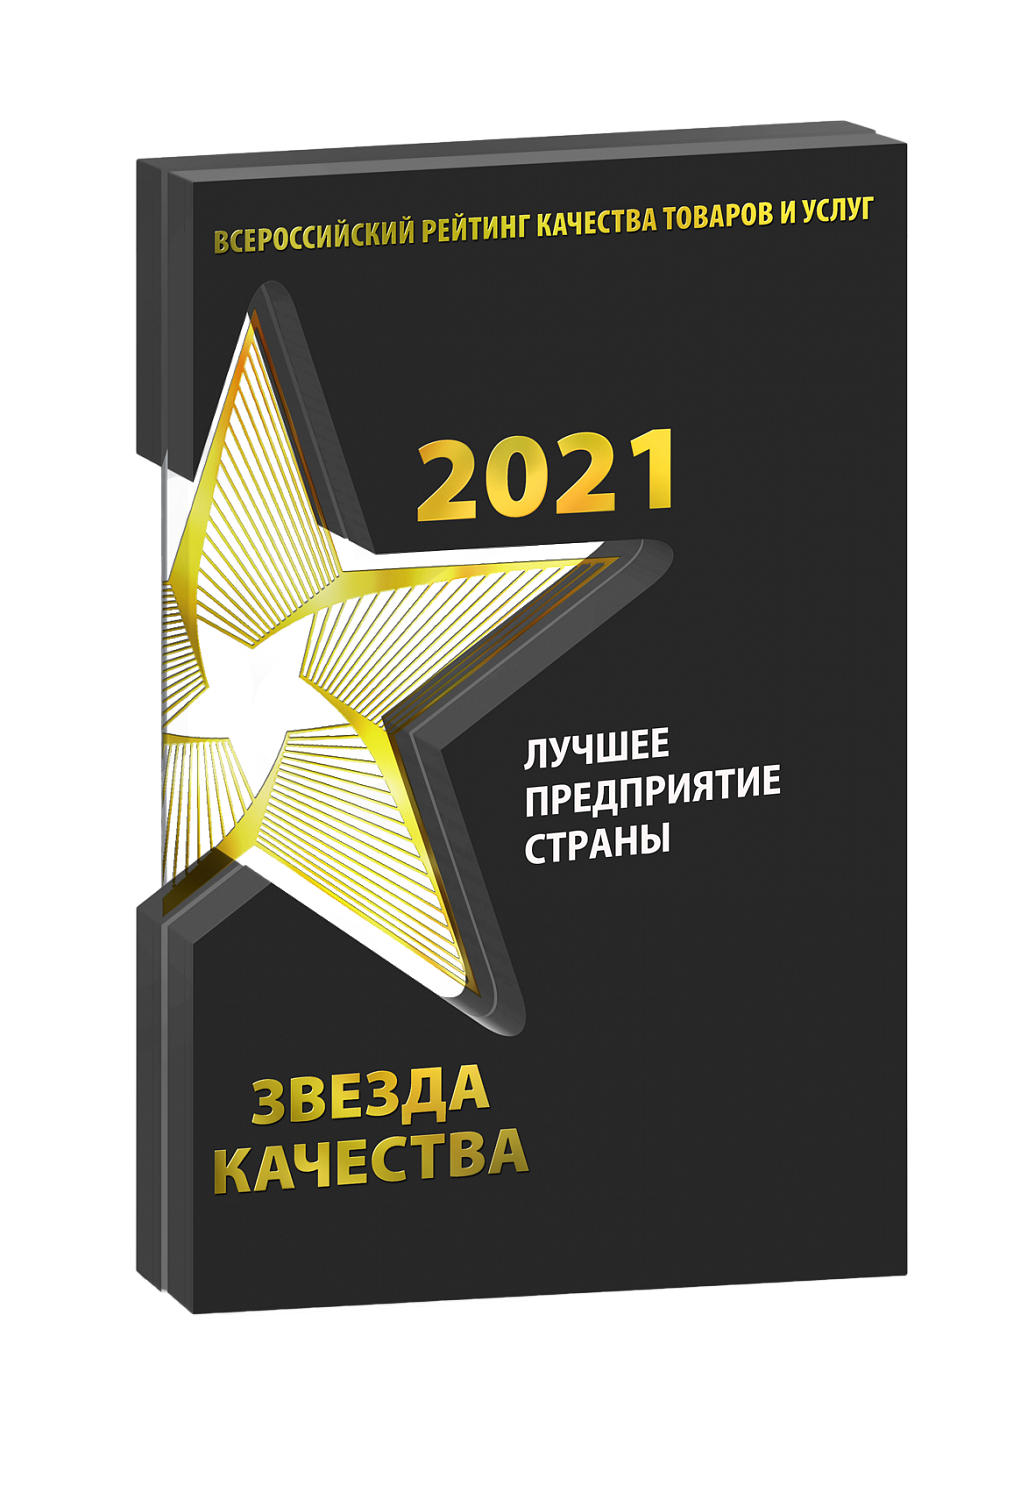 Центр по аудиту и контролю «Халяль» удостоился звания «Лучшее предприятие страны 2021»